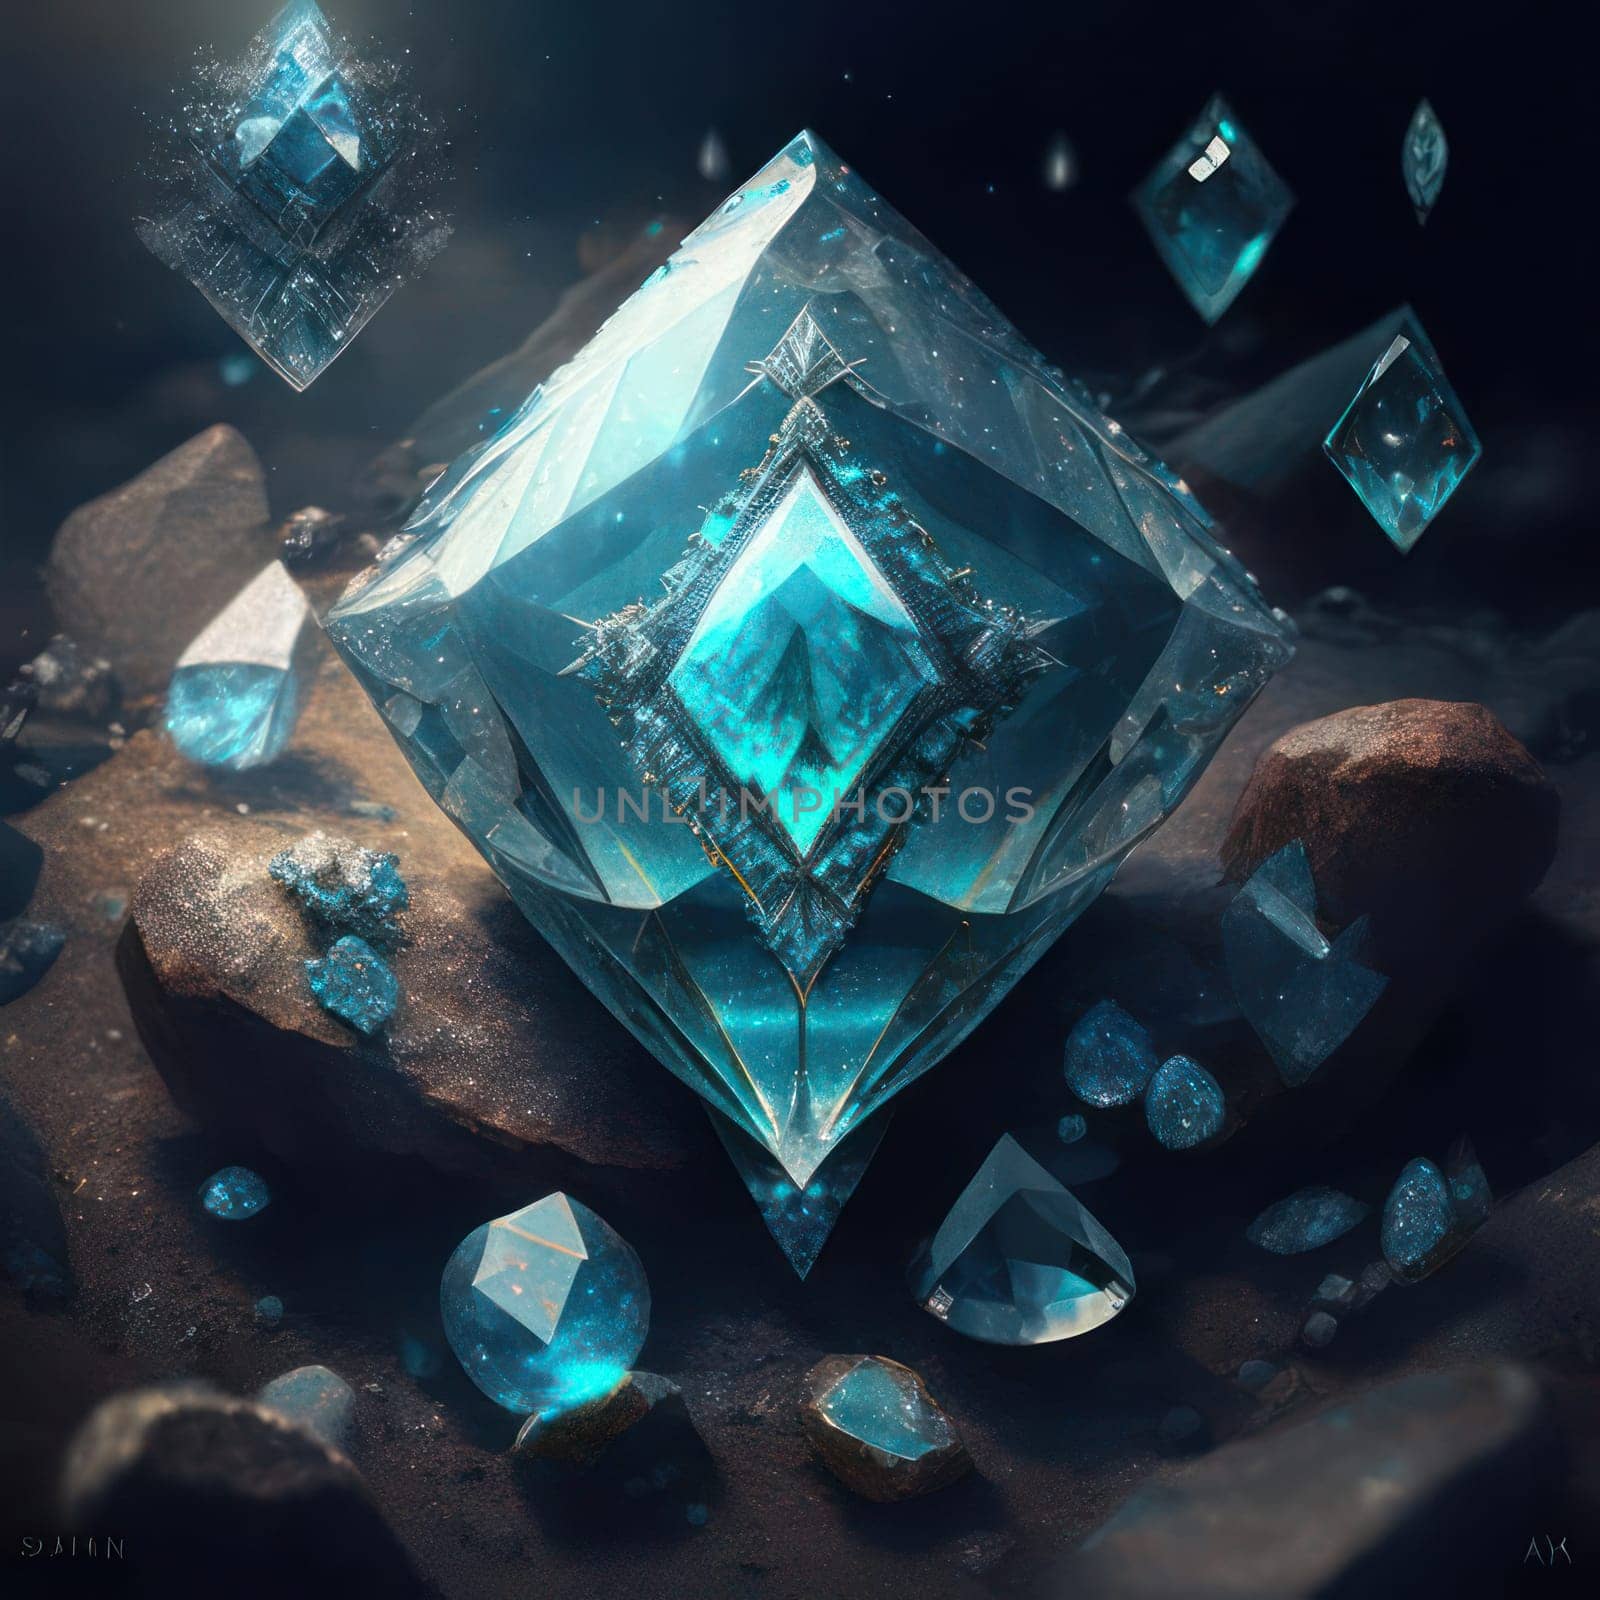 Magic crystals by nolimit046